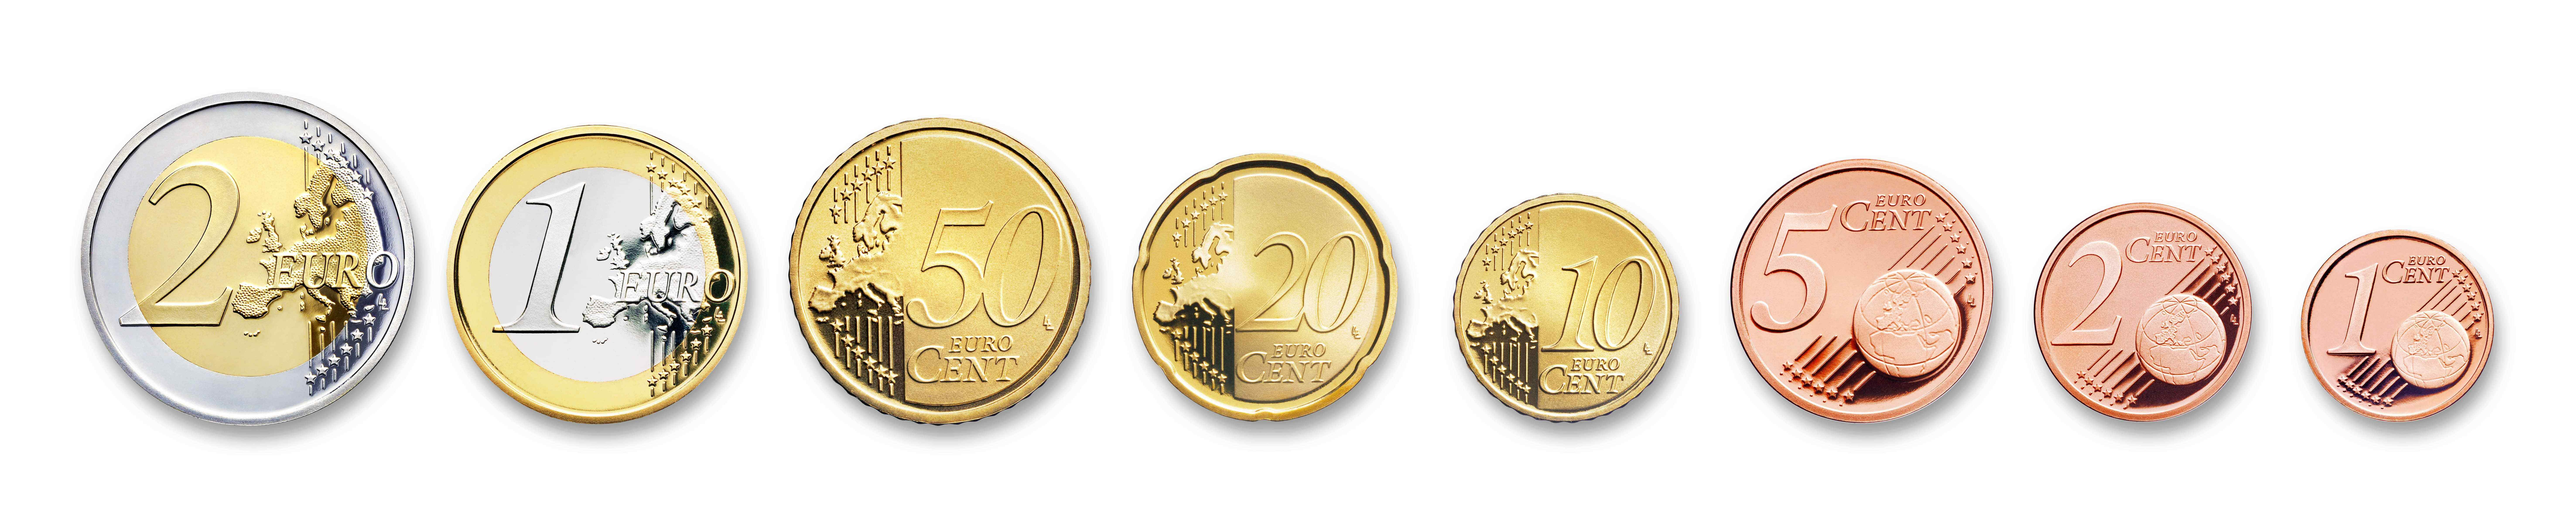 All Euro coins